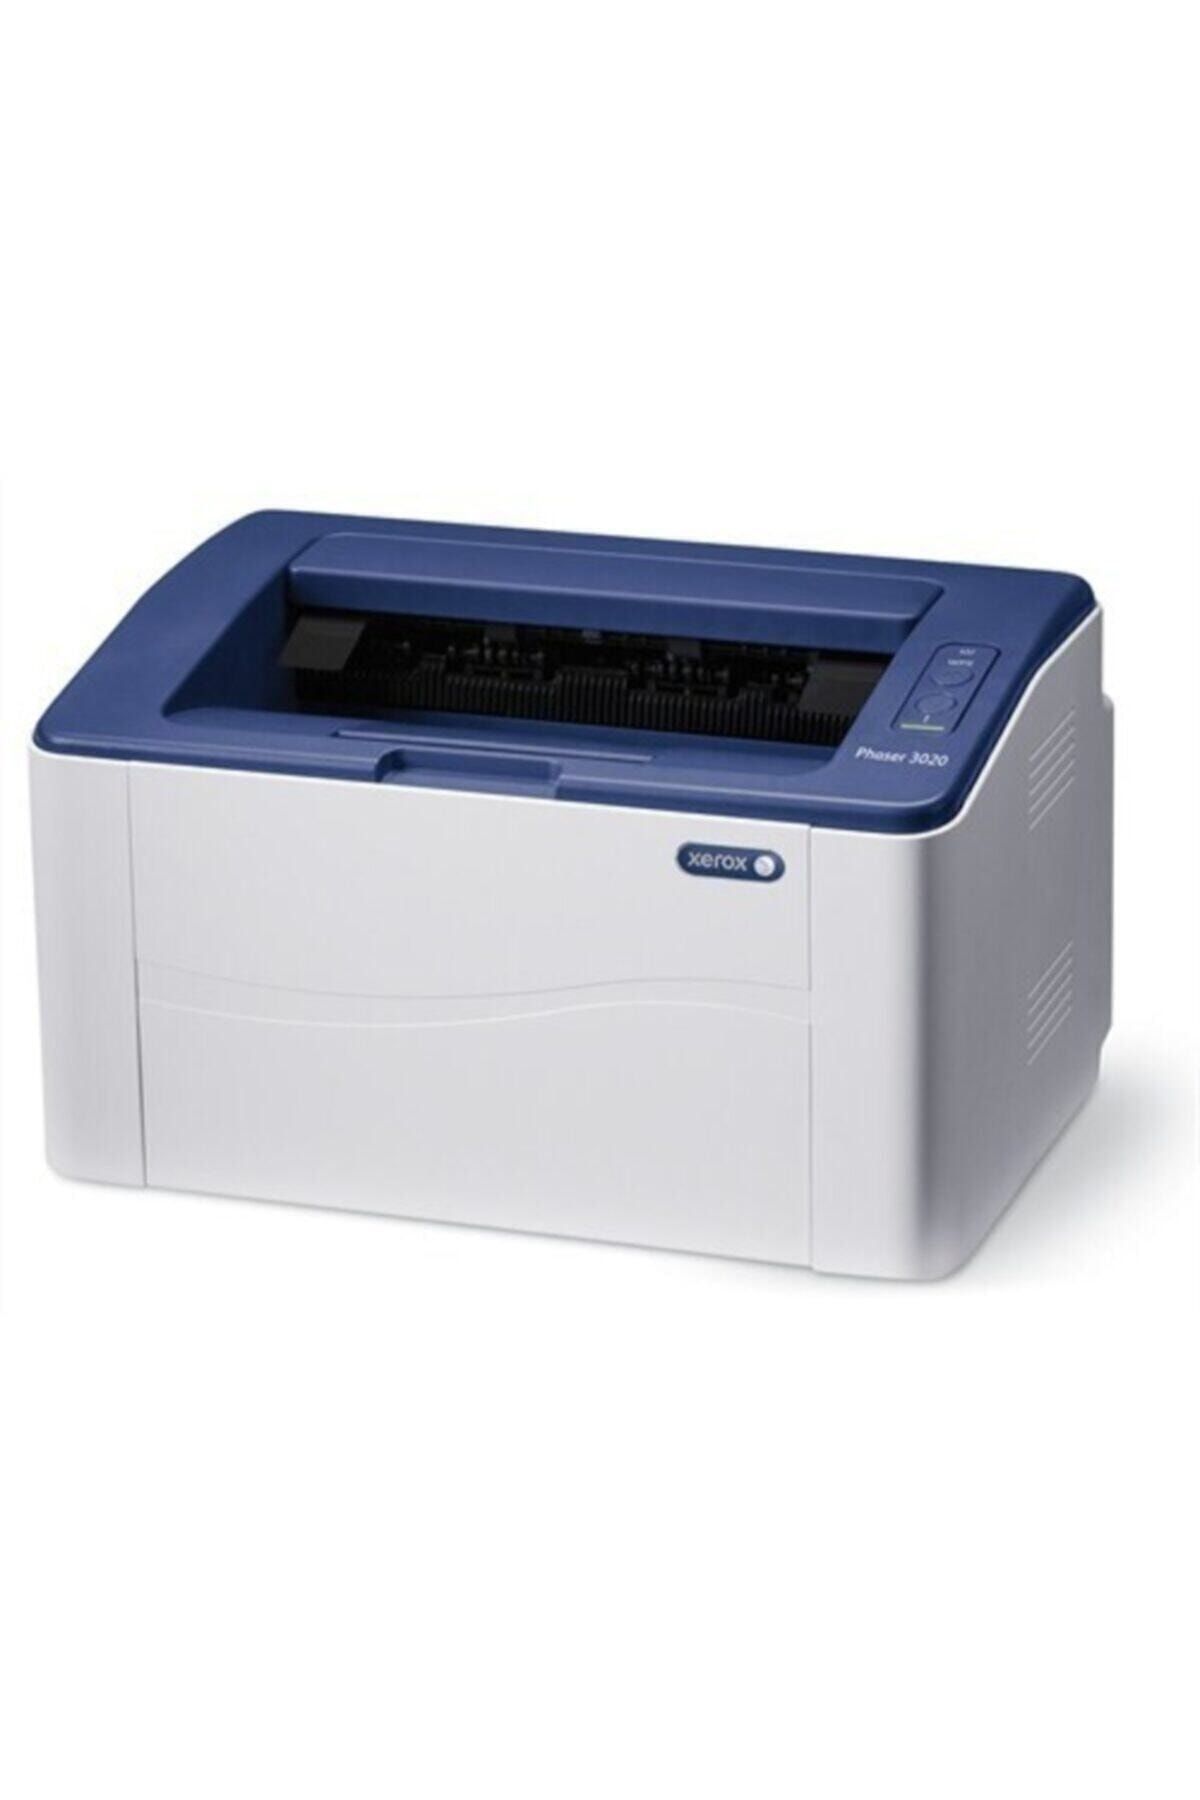 Купить принтер xerox 3020. Xerox Phaser 3020bi. Принтер Xerox Phaser 3020. Лазерный принтер Xerox Phaser 3052ni. Xerox Phaser 3020bi, ч/б, a4.